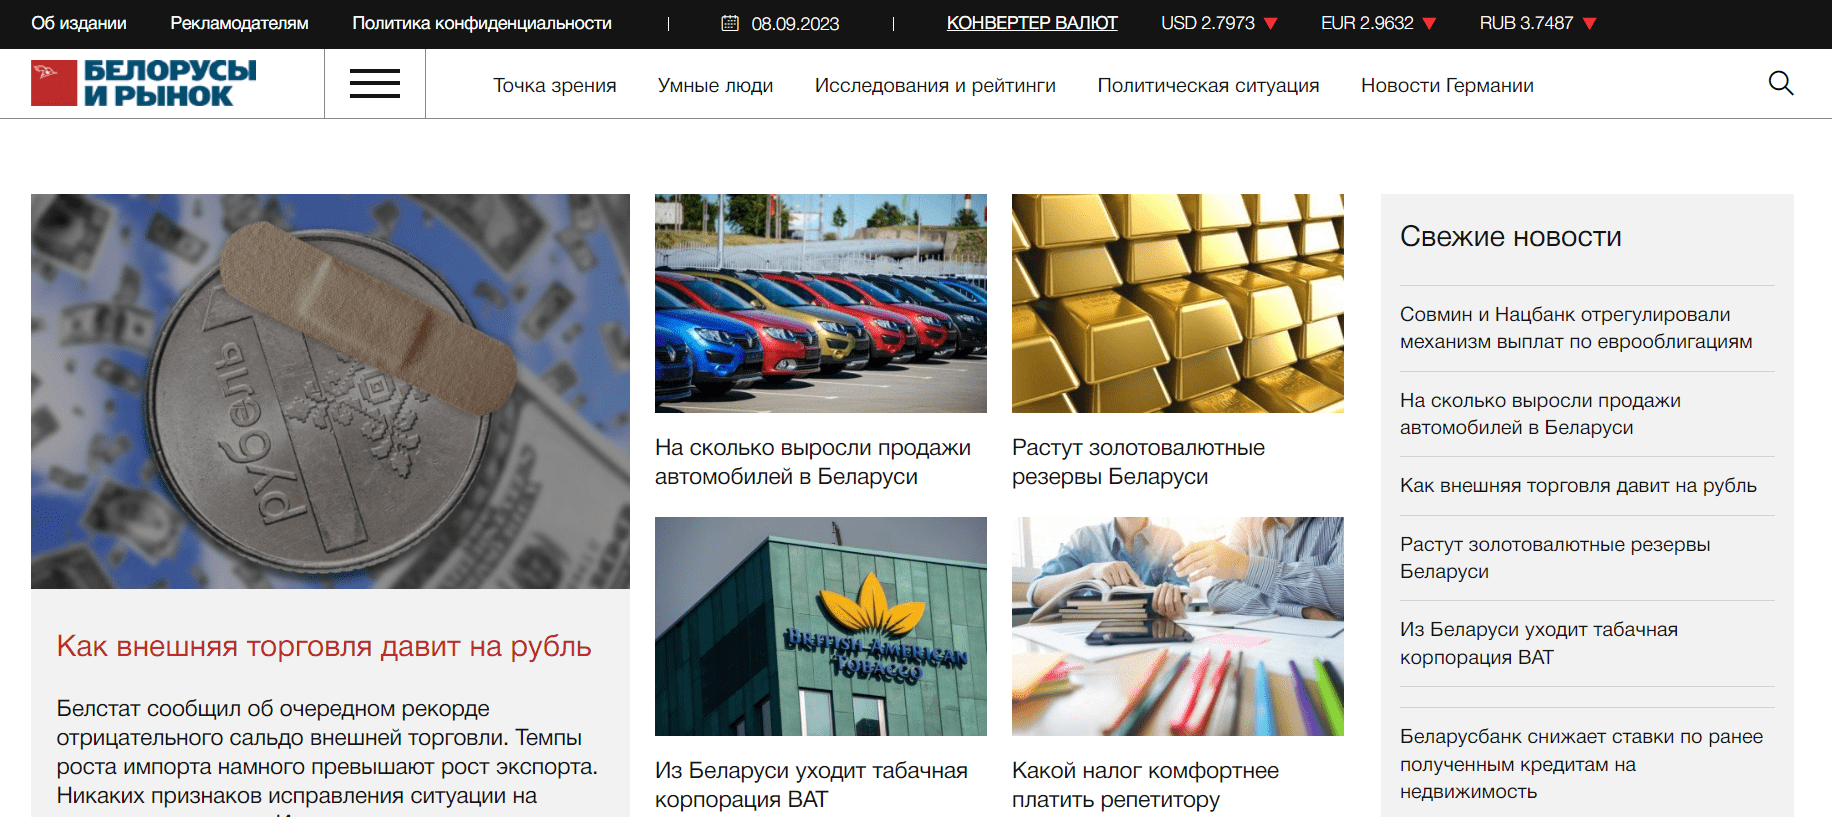 Белорусы и рынок (belmarket.by) - официальный сайт